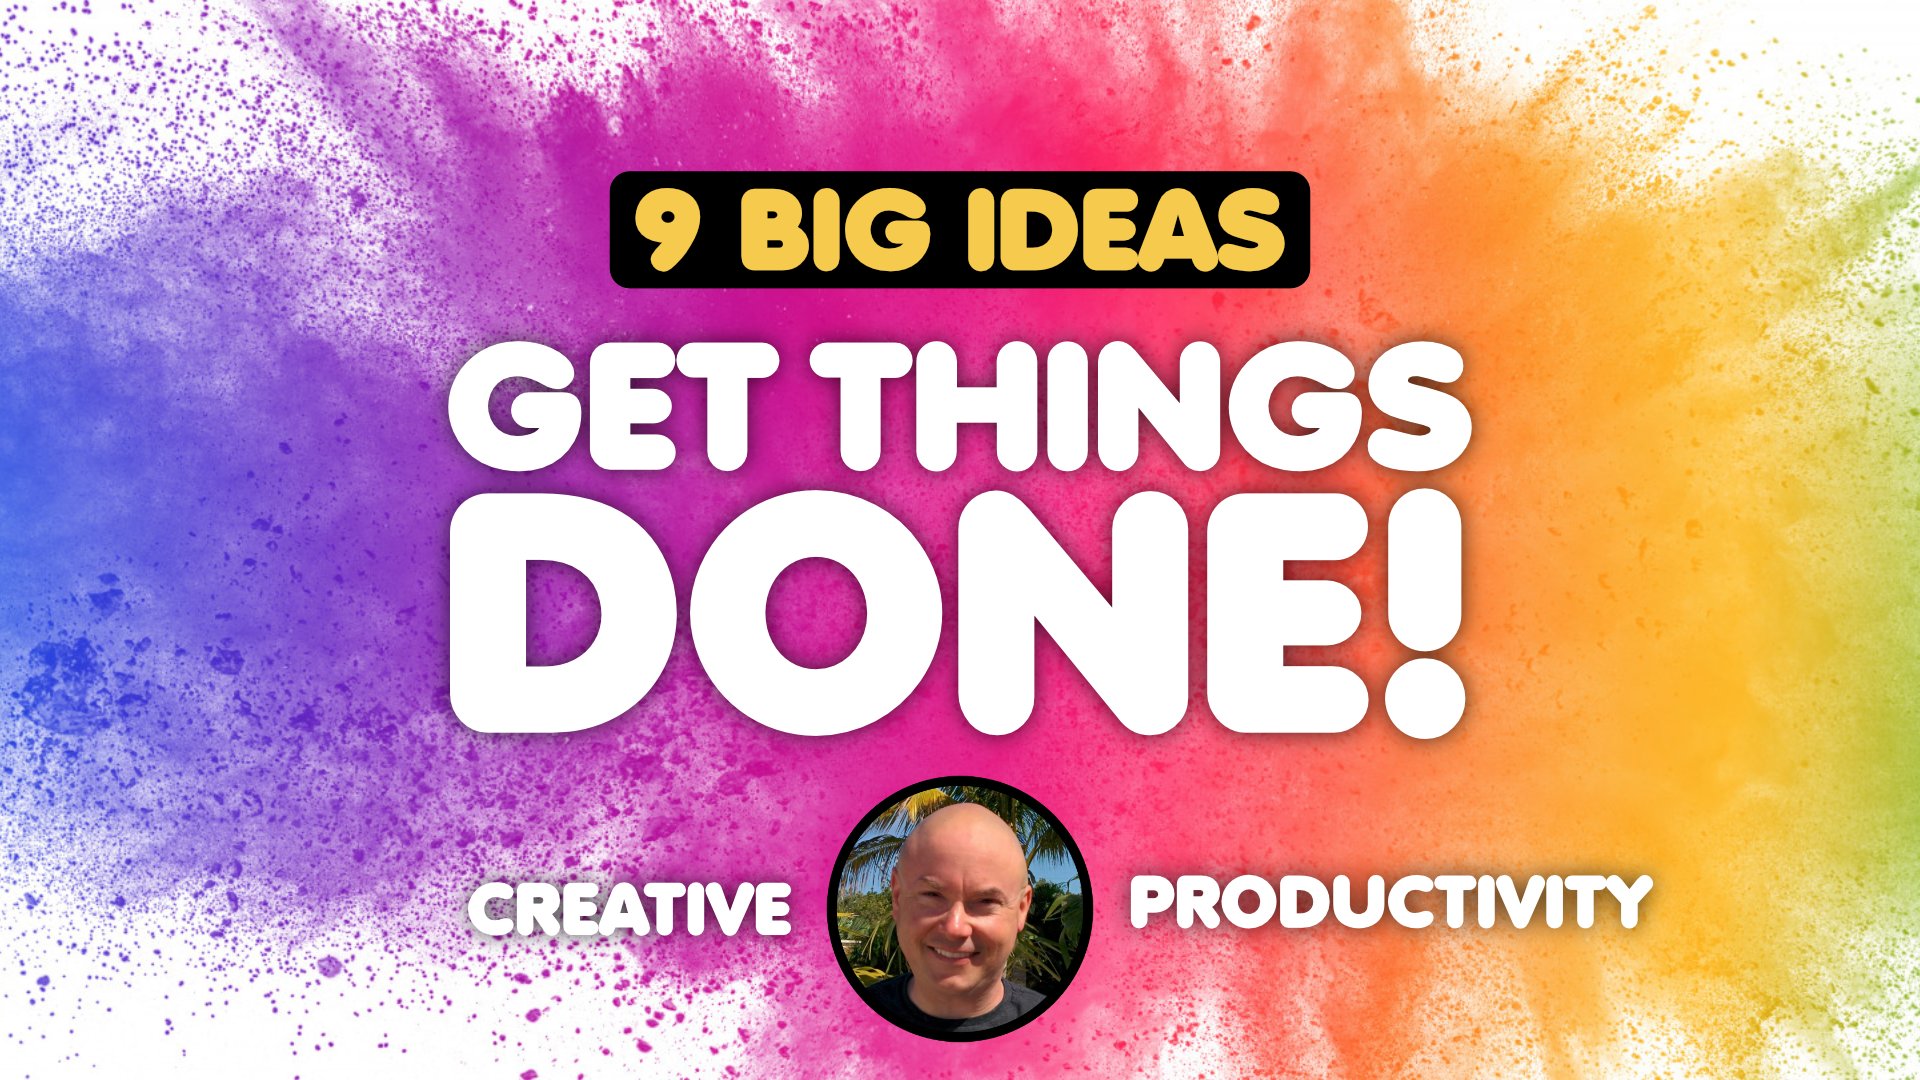 آموزش بهره وری خلاق: 9 ایده بزرگ برای انجام کارها